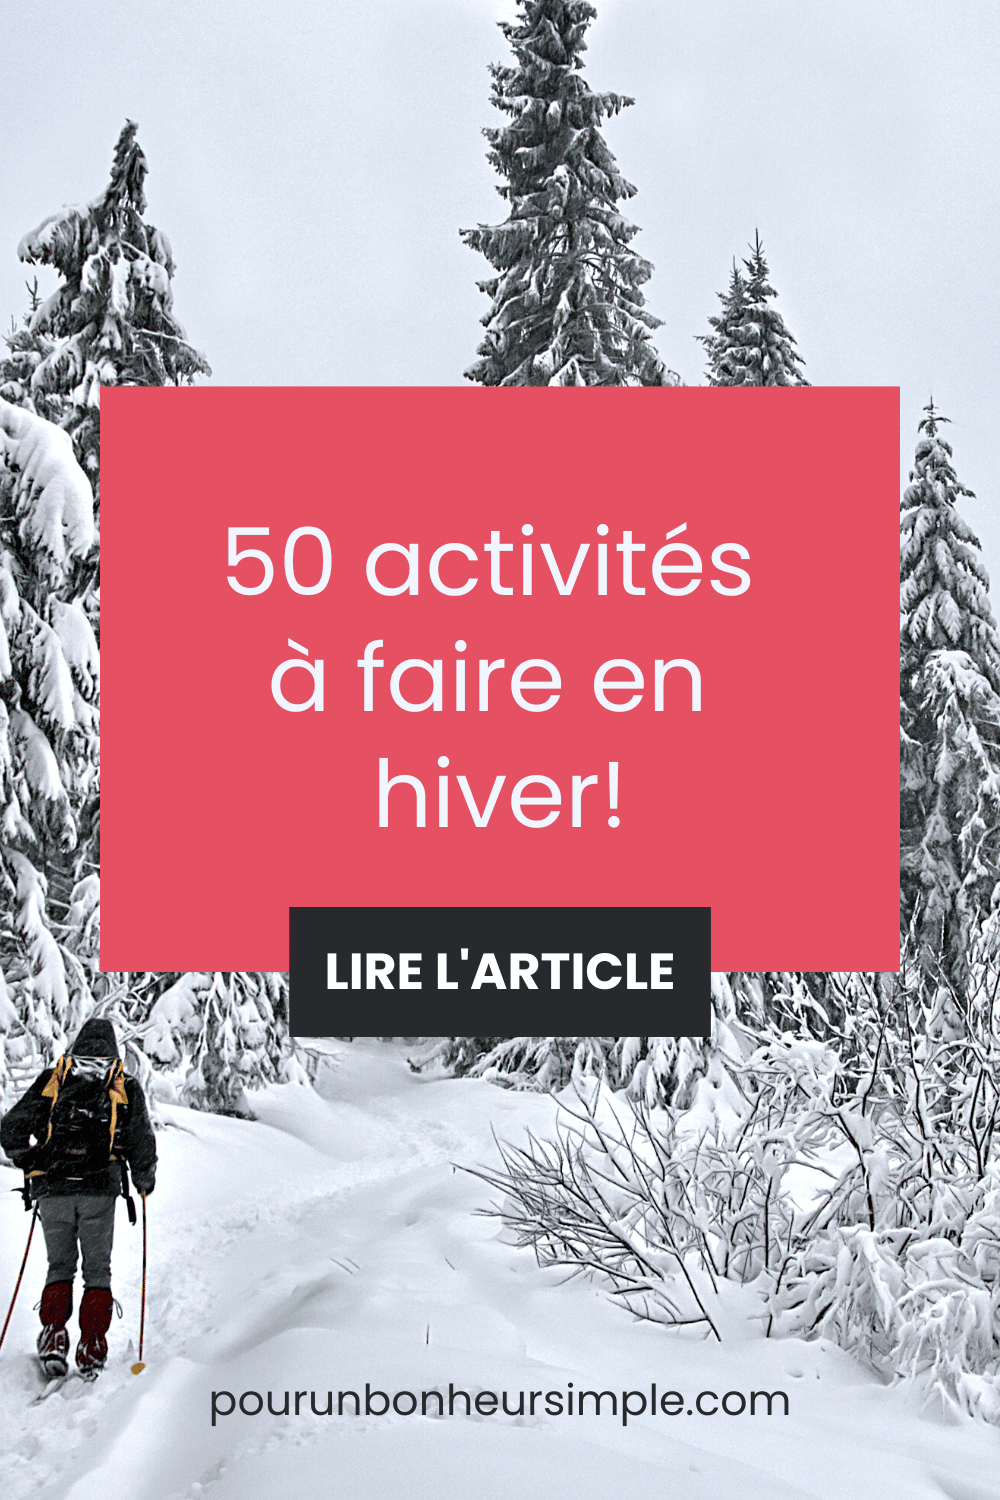 Voici 50 activités hivernales pour du bonheur et du plaisir cet hiver. Un article du blog Pour un bonheur simple.